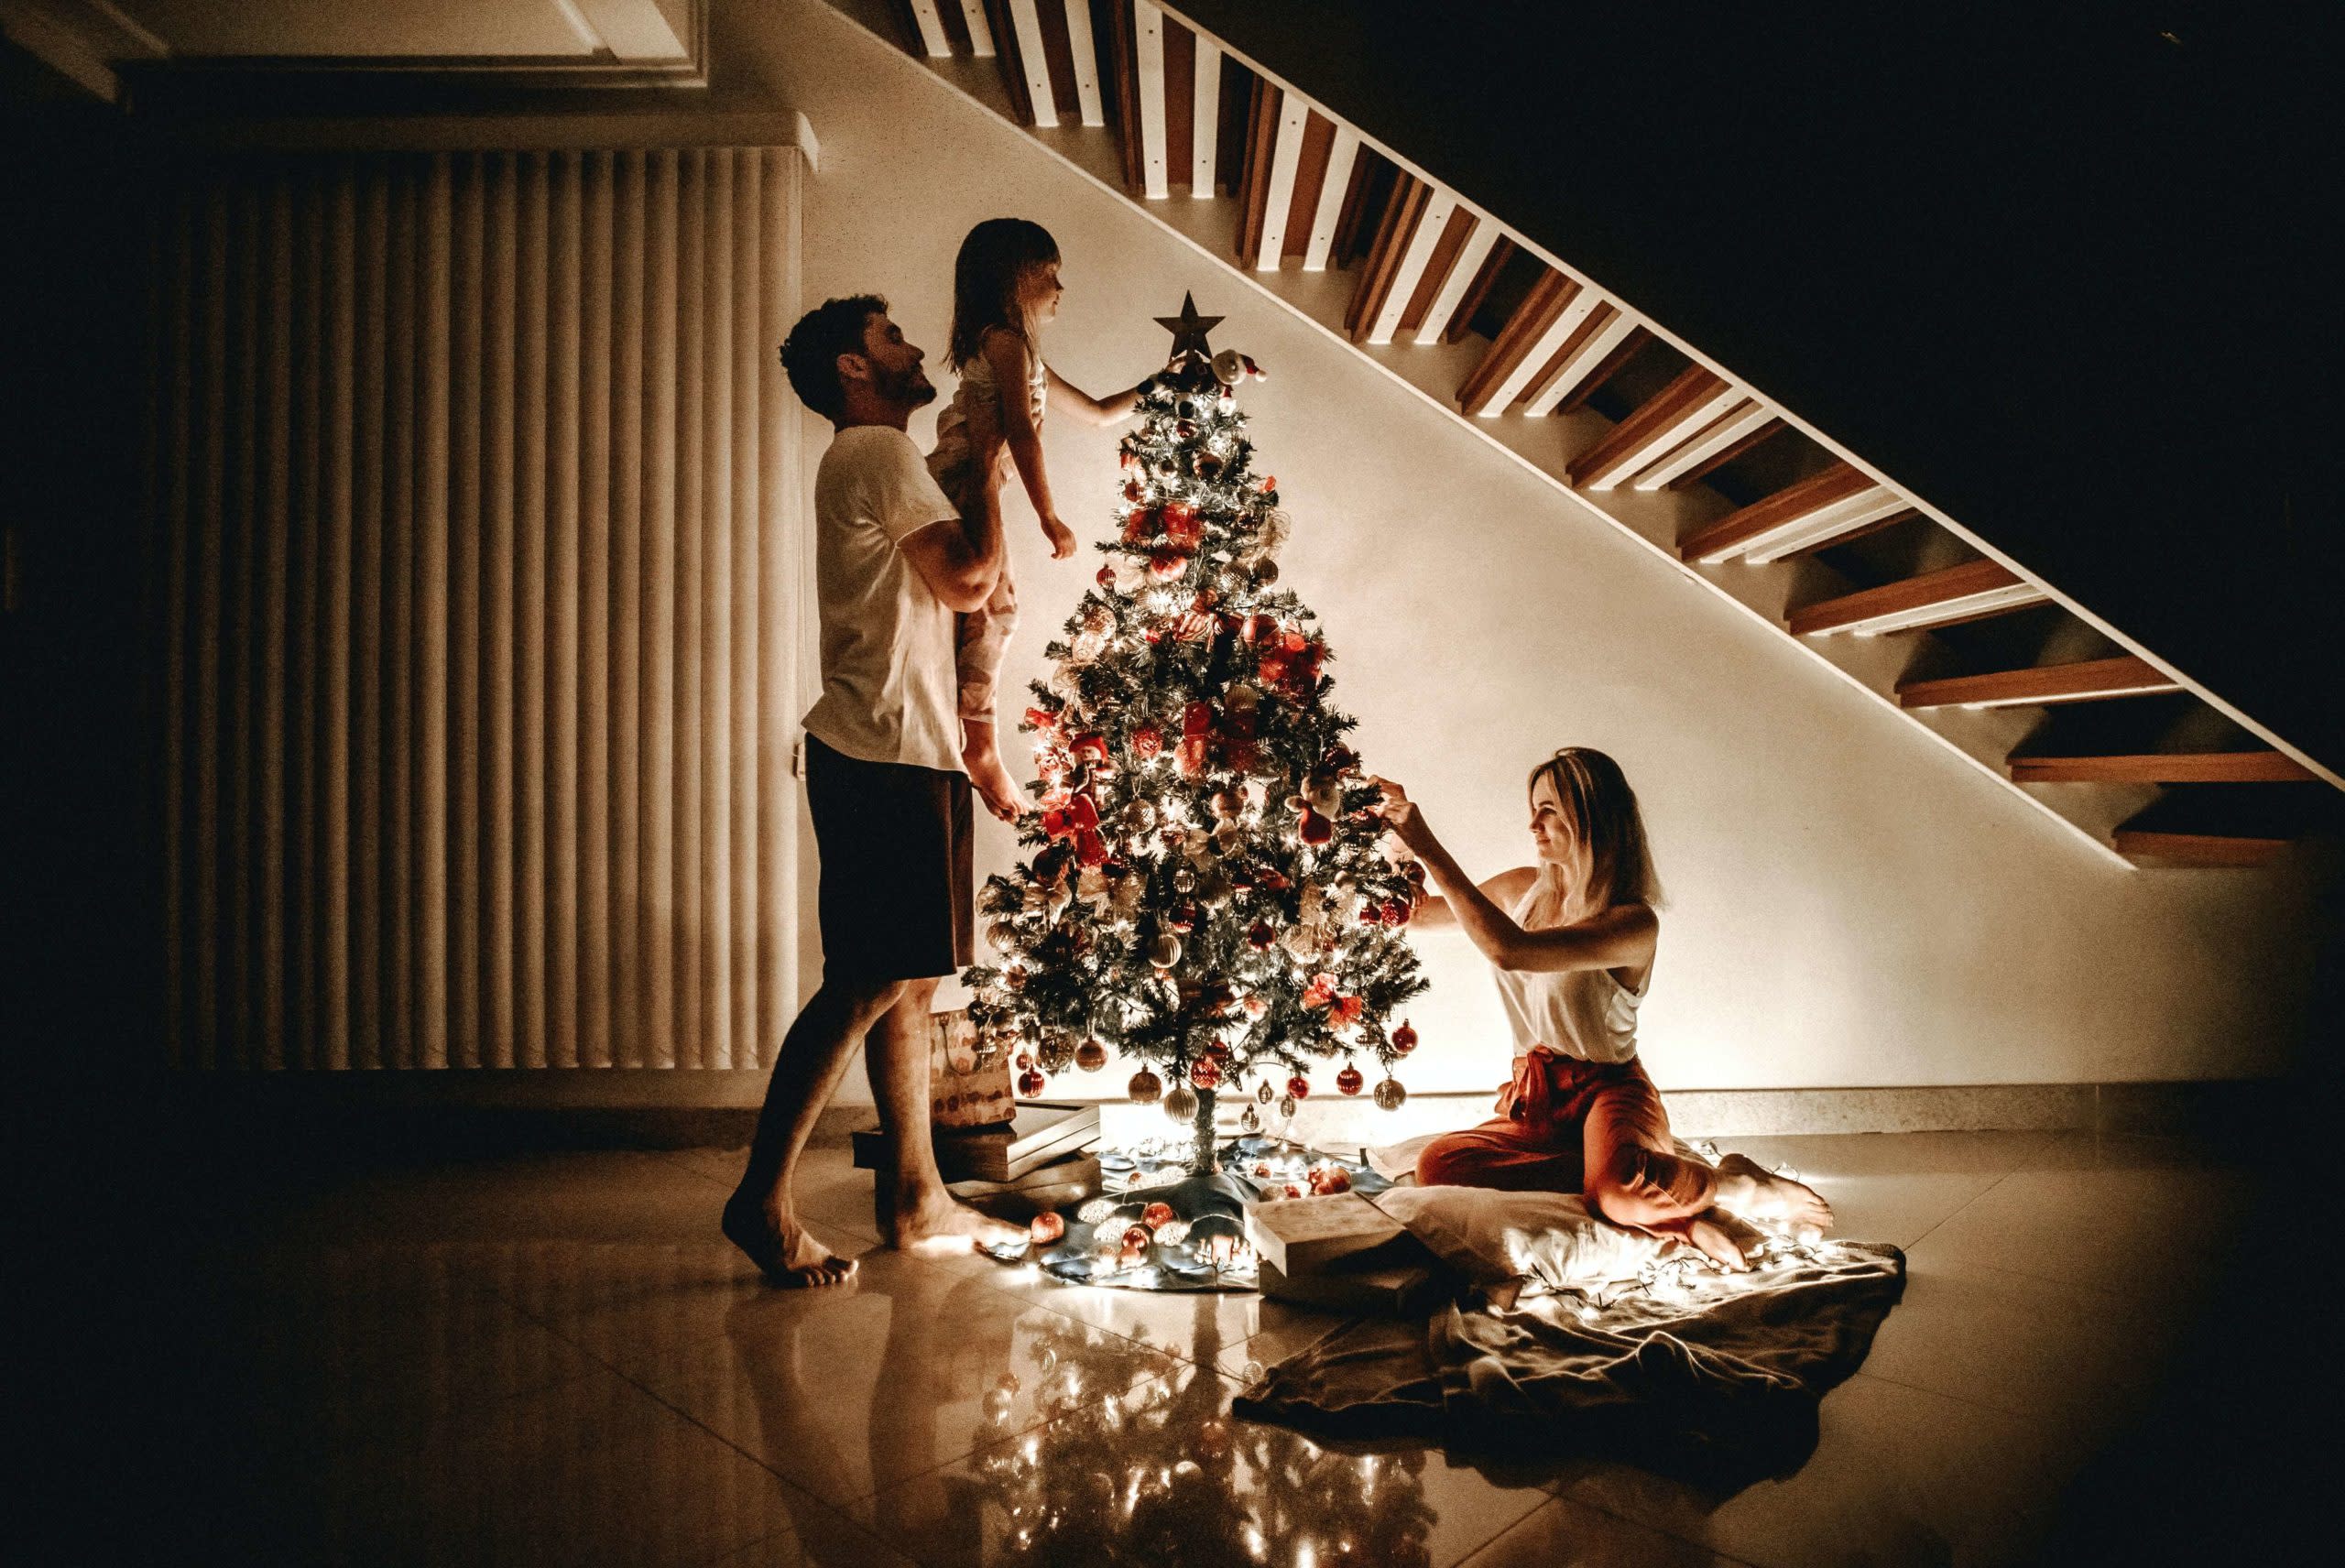 Traditions de Noël en France